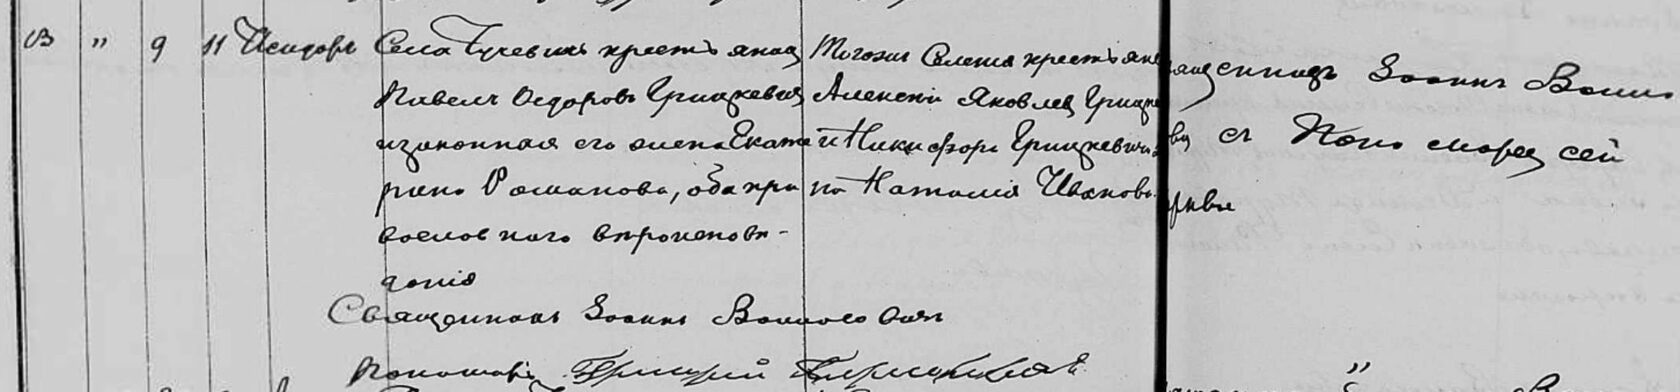 Запіс аб нараджэнні Грыцкевіча Сідара Паўлавіча, 1870 г.